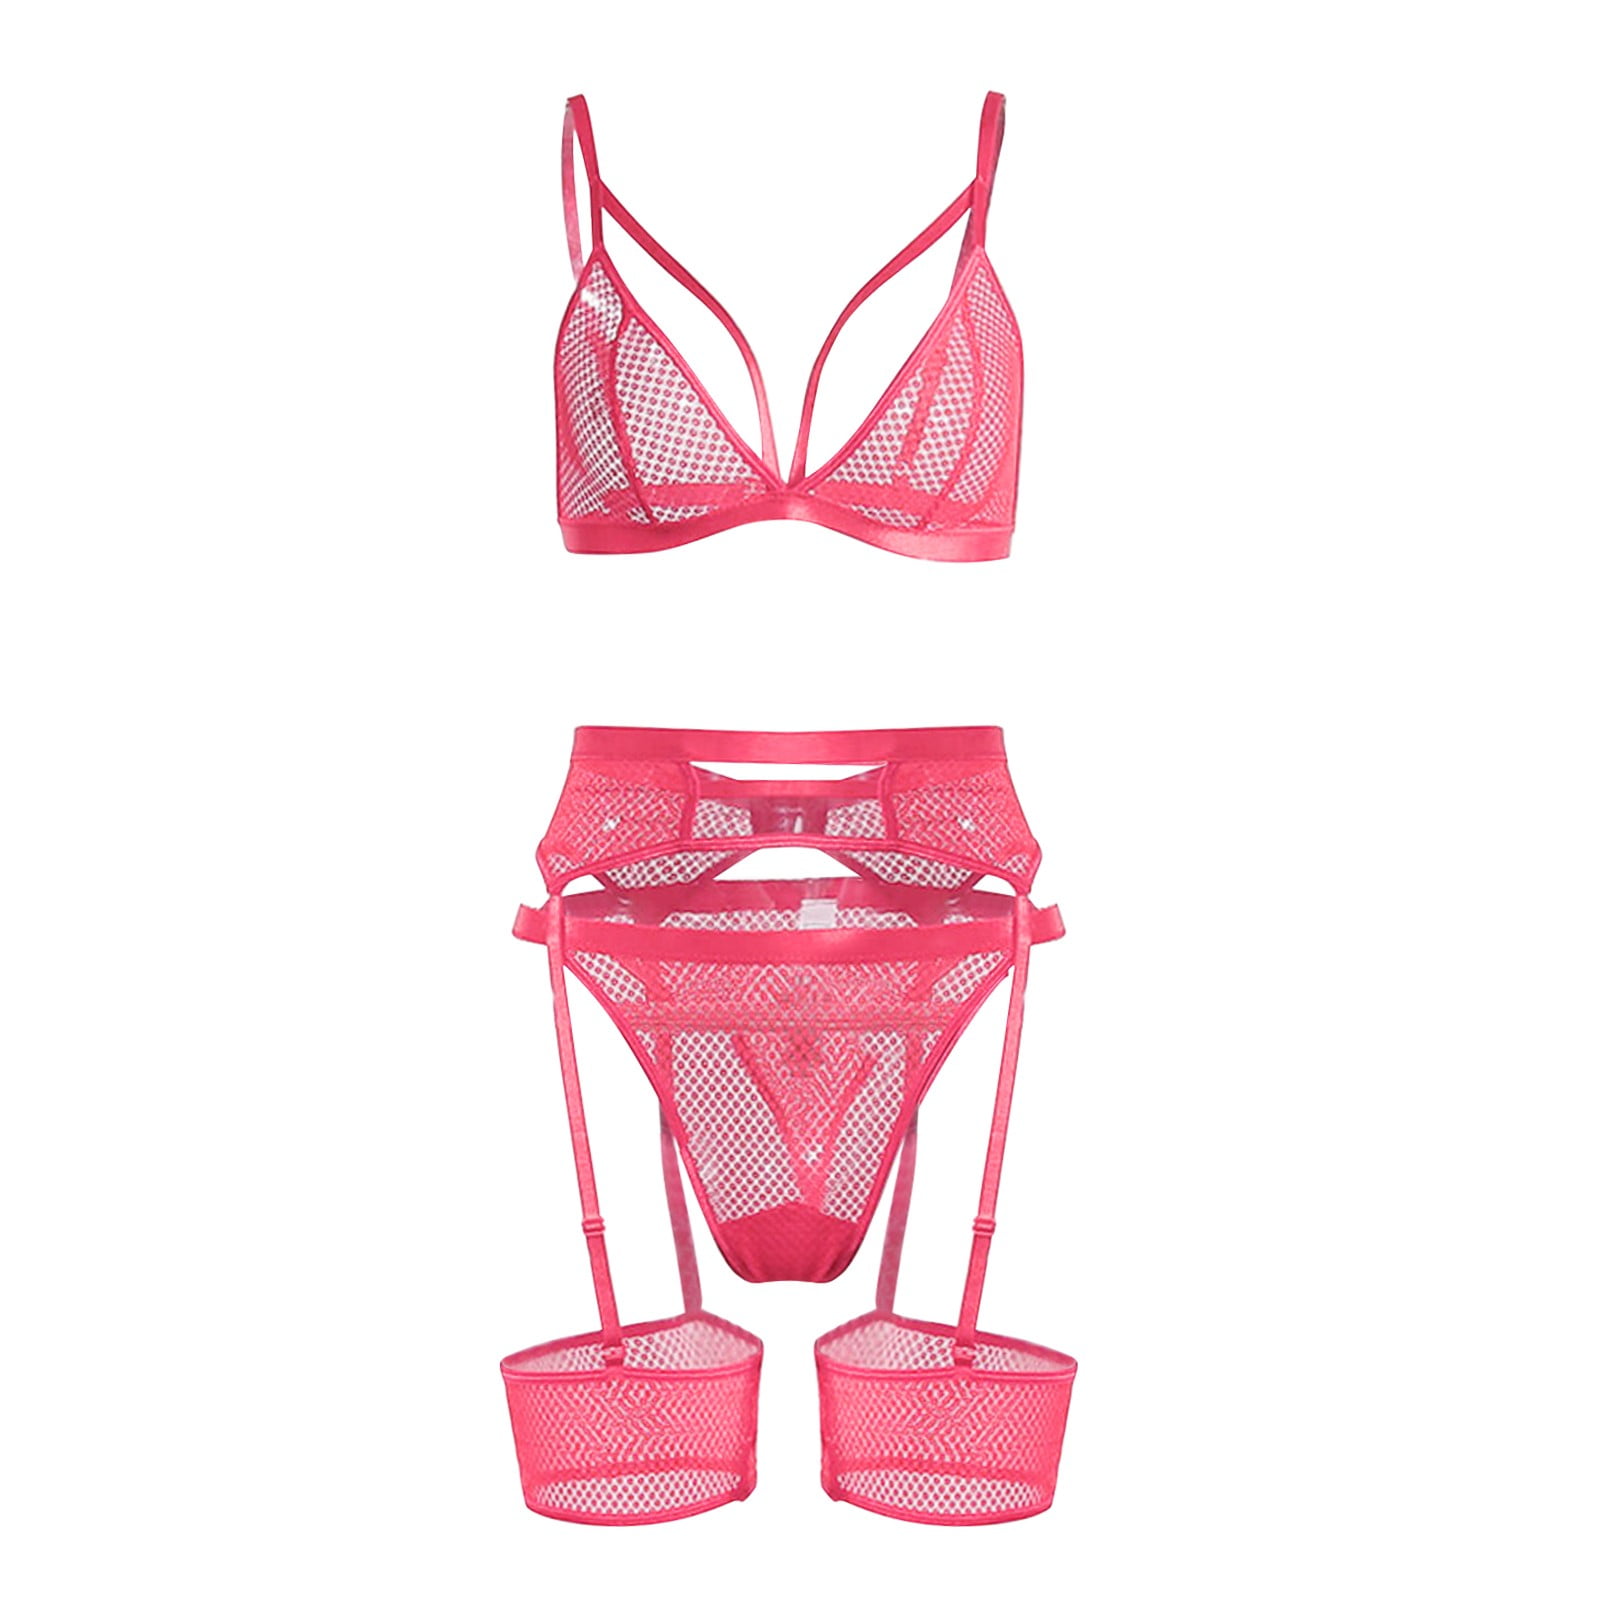 Lingerie for Women Bra Set Lingerie Set Lace Hot Pink Xl